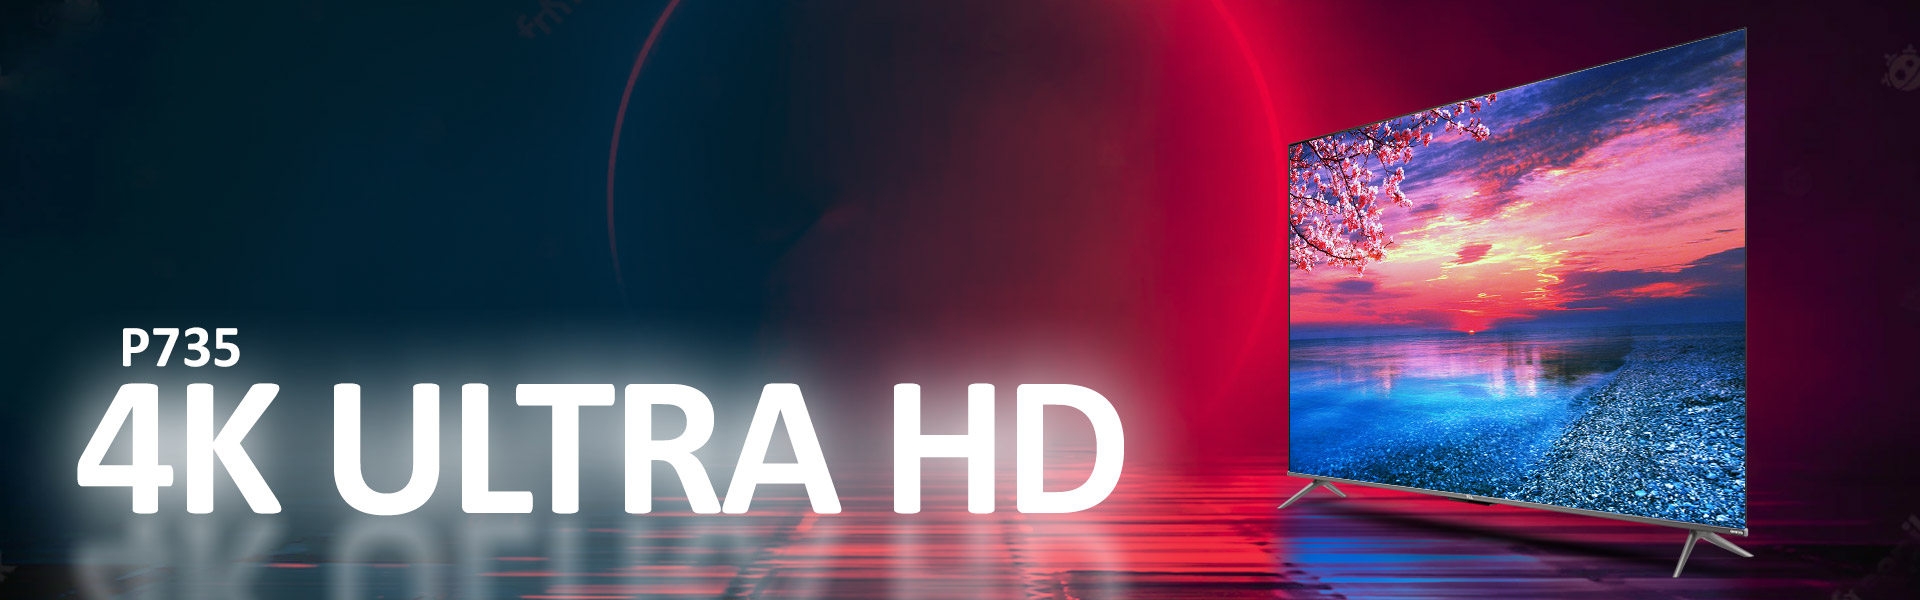 کیفیت تصویر ULTRA HD 4K